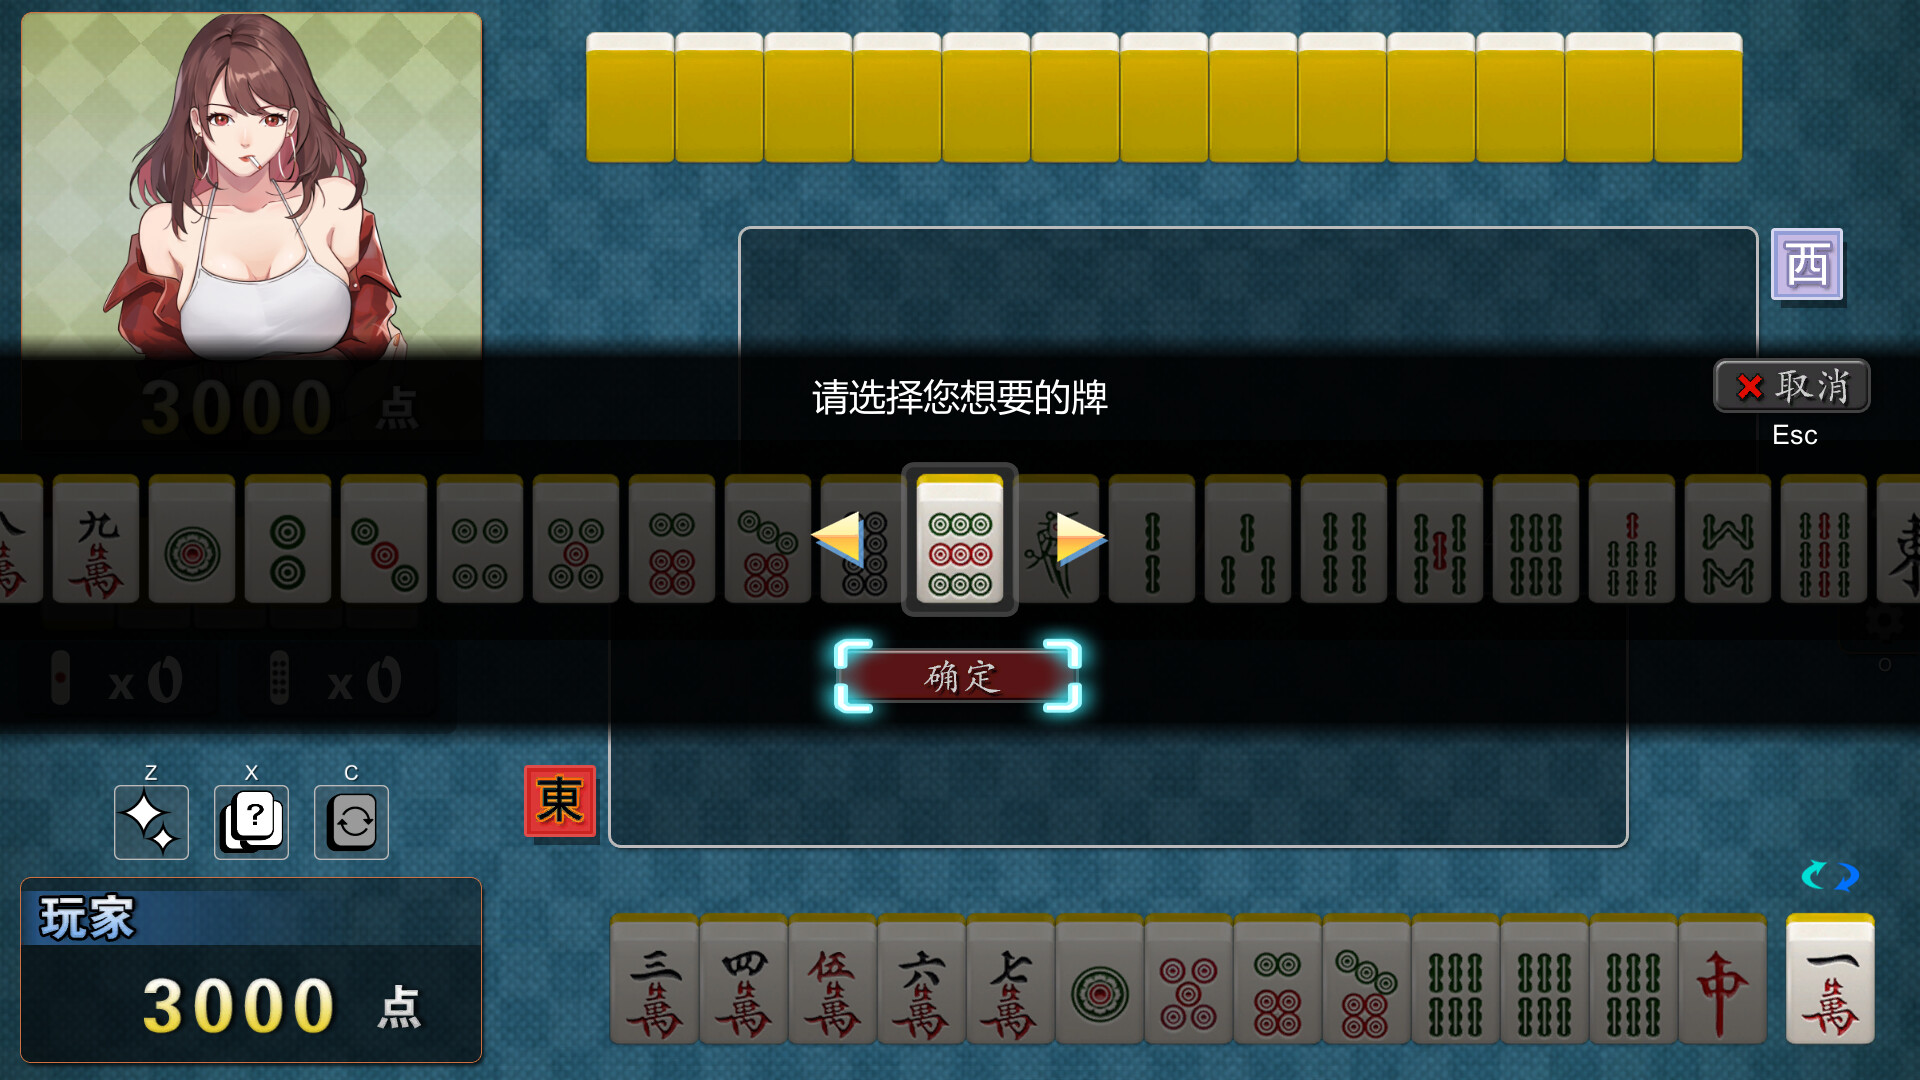 勾八麻将(J8 Mahjong) [V3.0.0] [J8 Games]